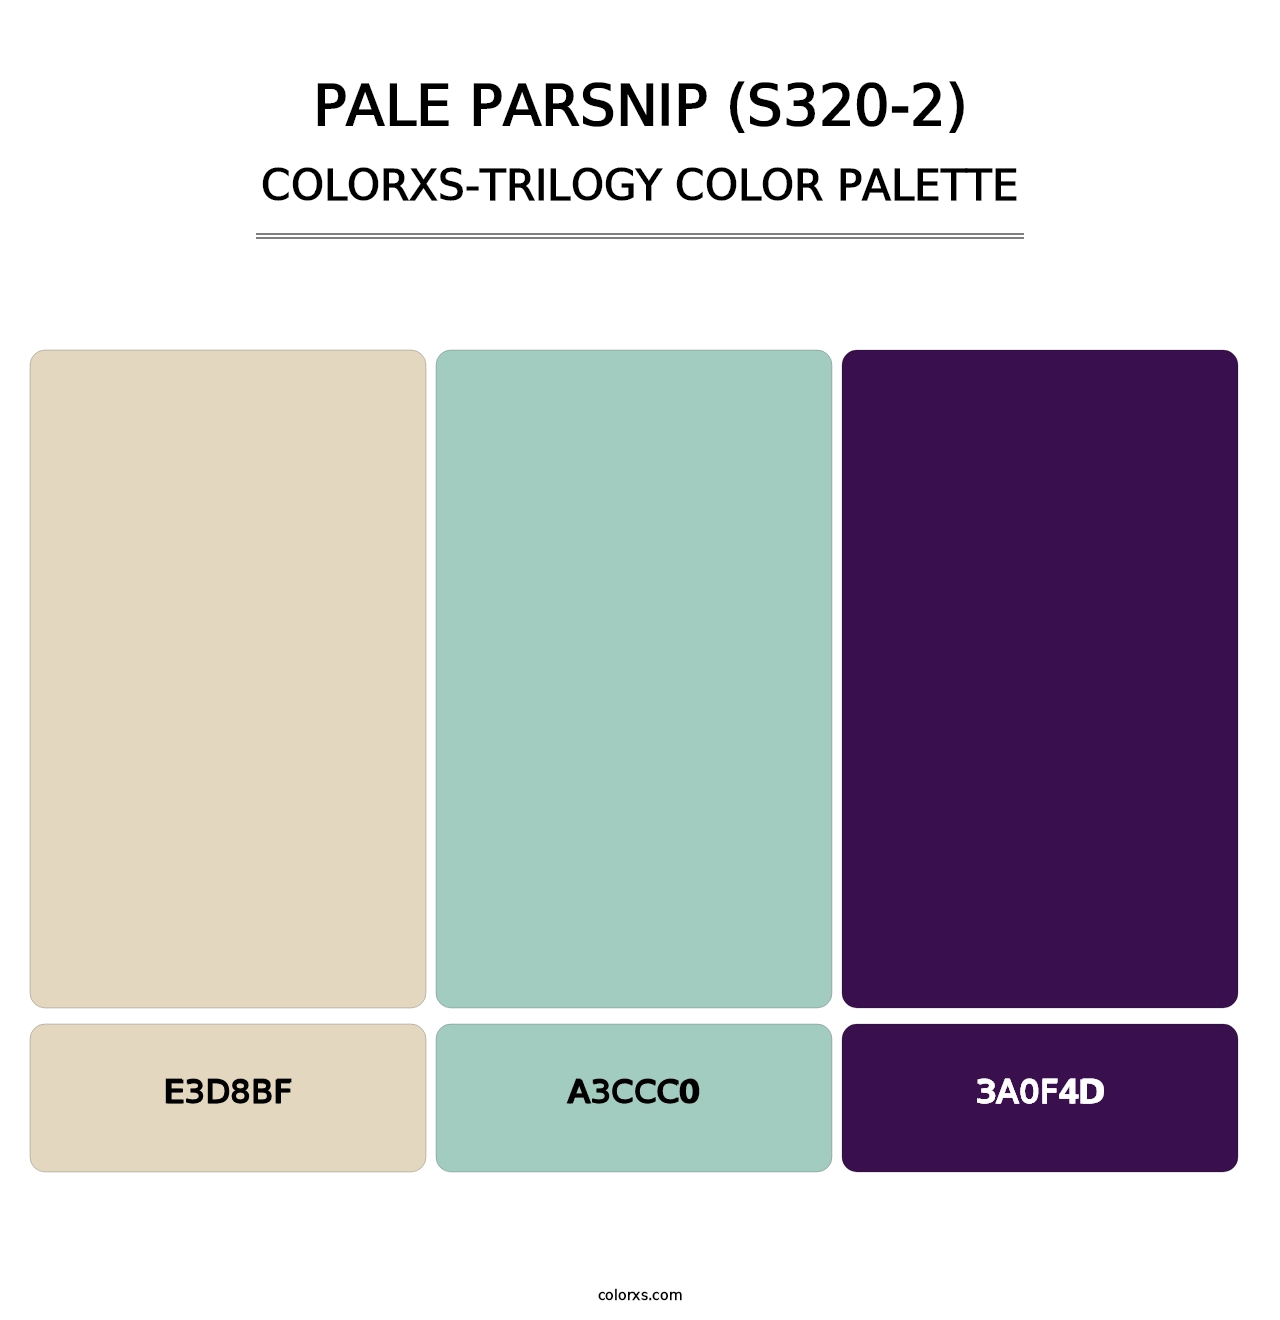 Pale Parsnip (S320-2) - Colorxs Trilogy Palette